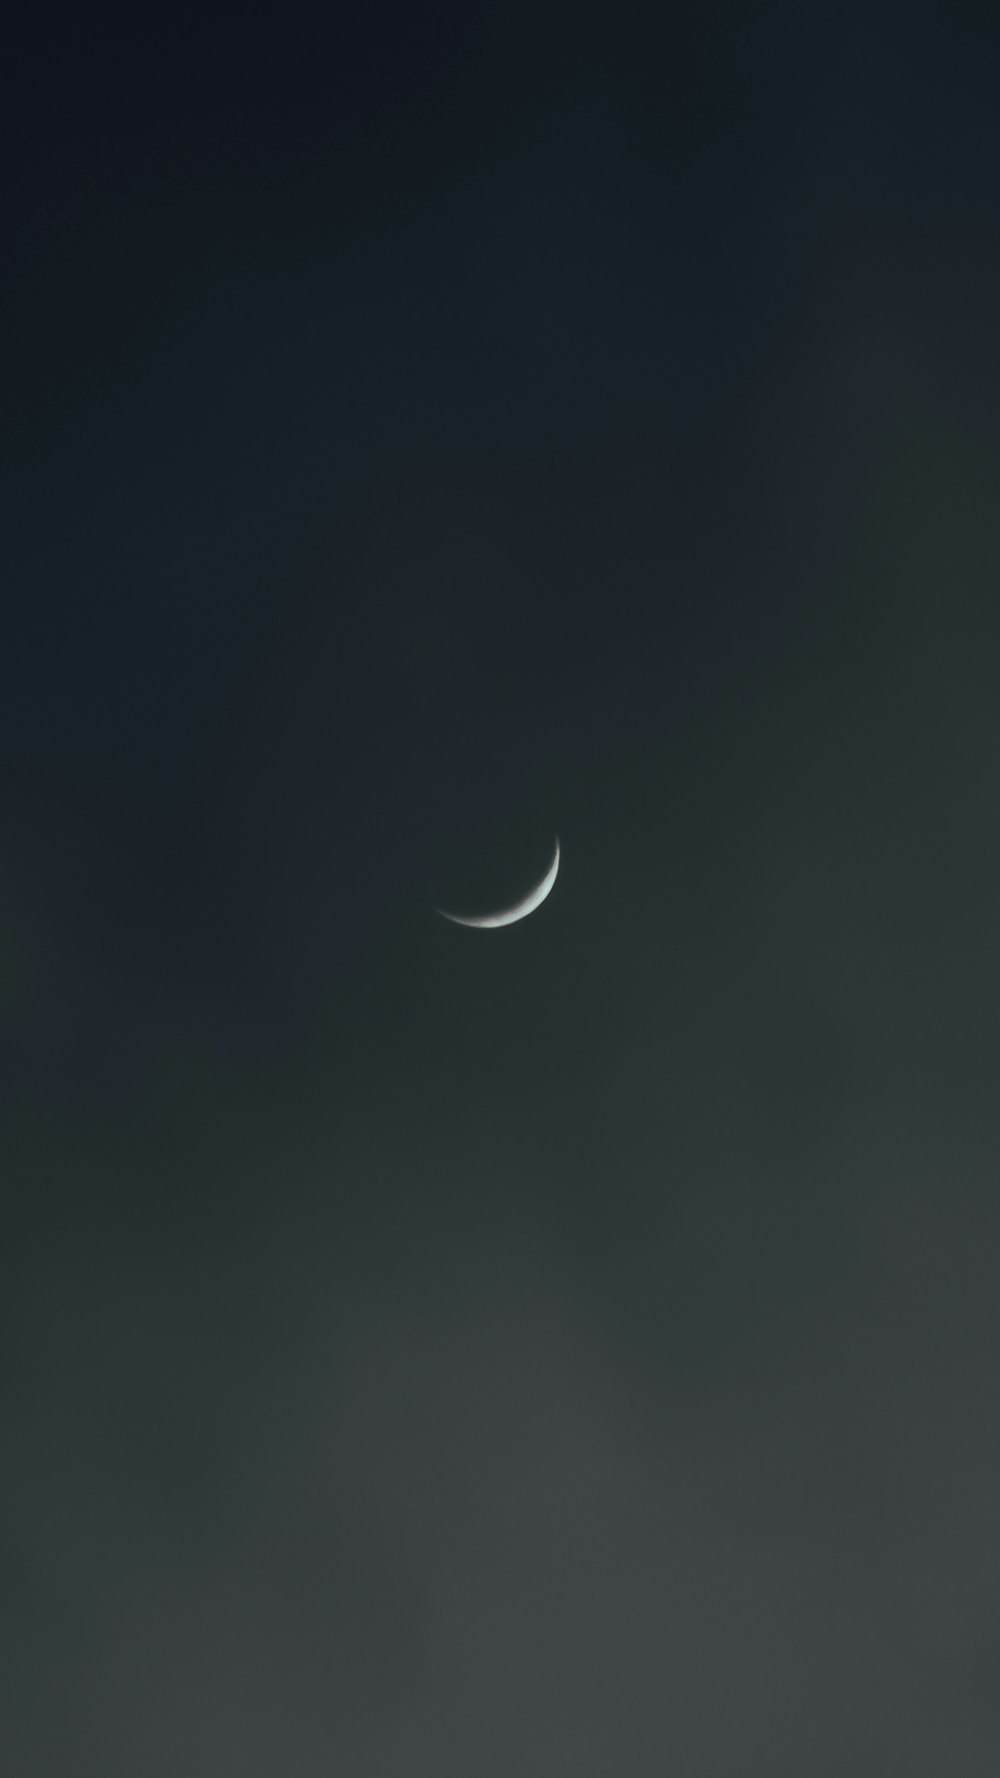 暗い雲の切れ間から月が見える